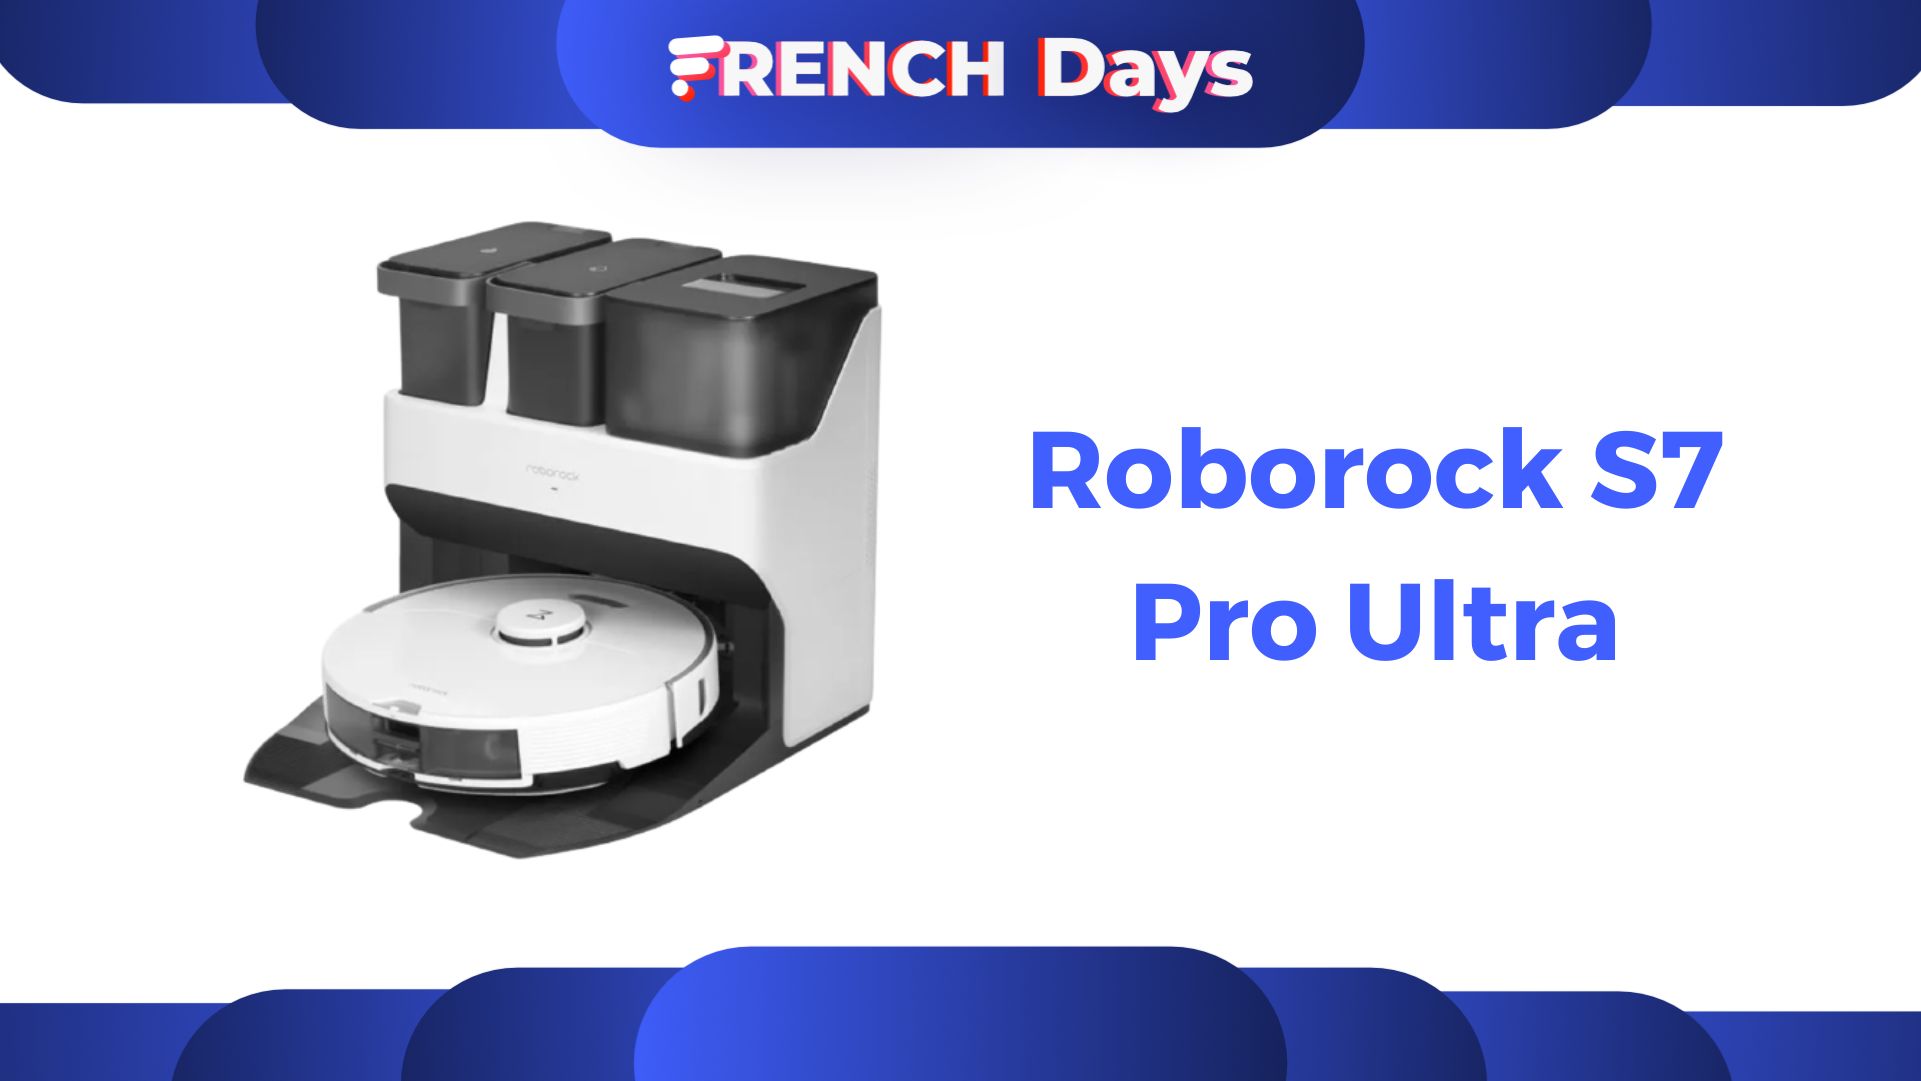 French Days Boulanger : cet aspirateur laveur iRobot profite d'une